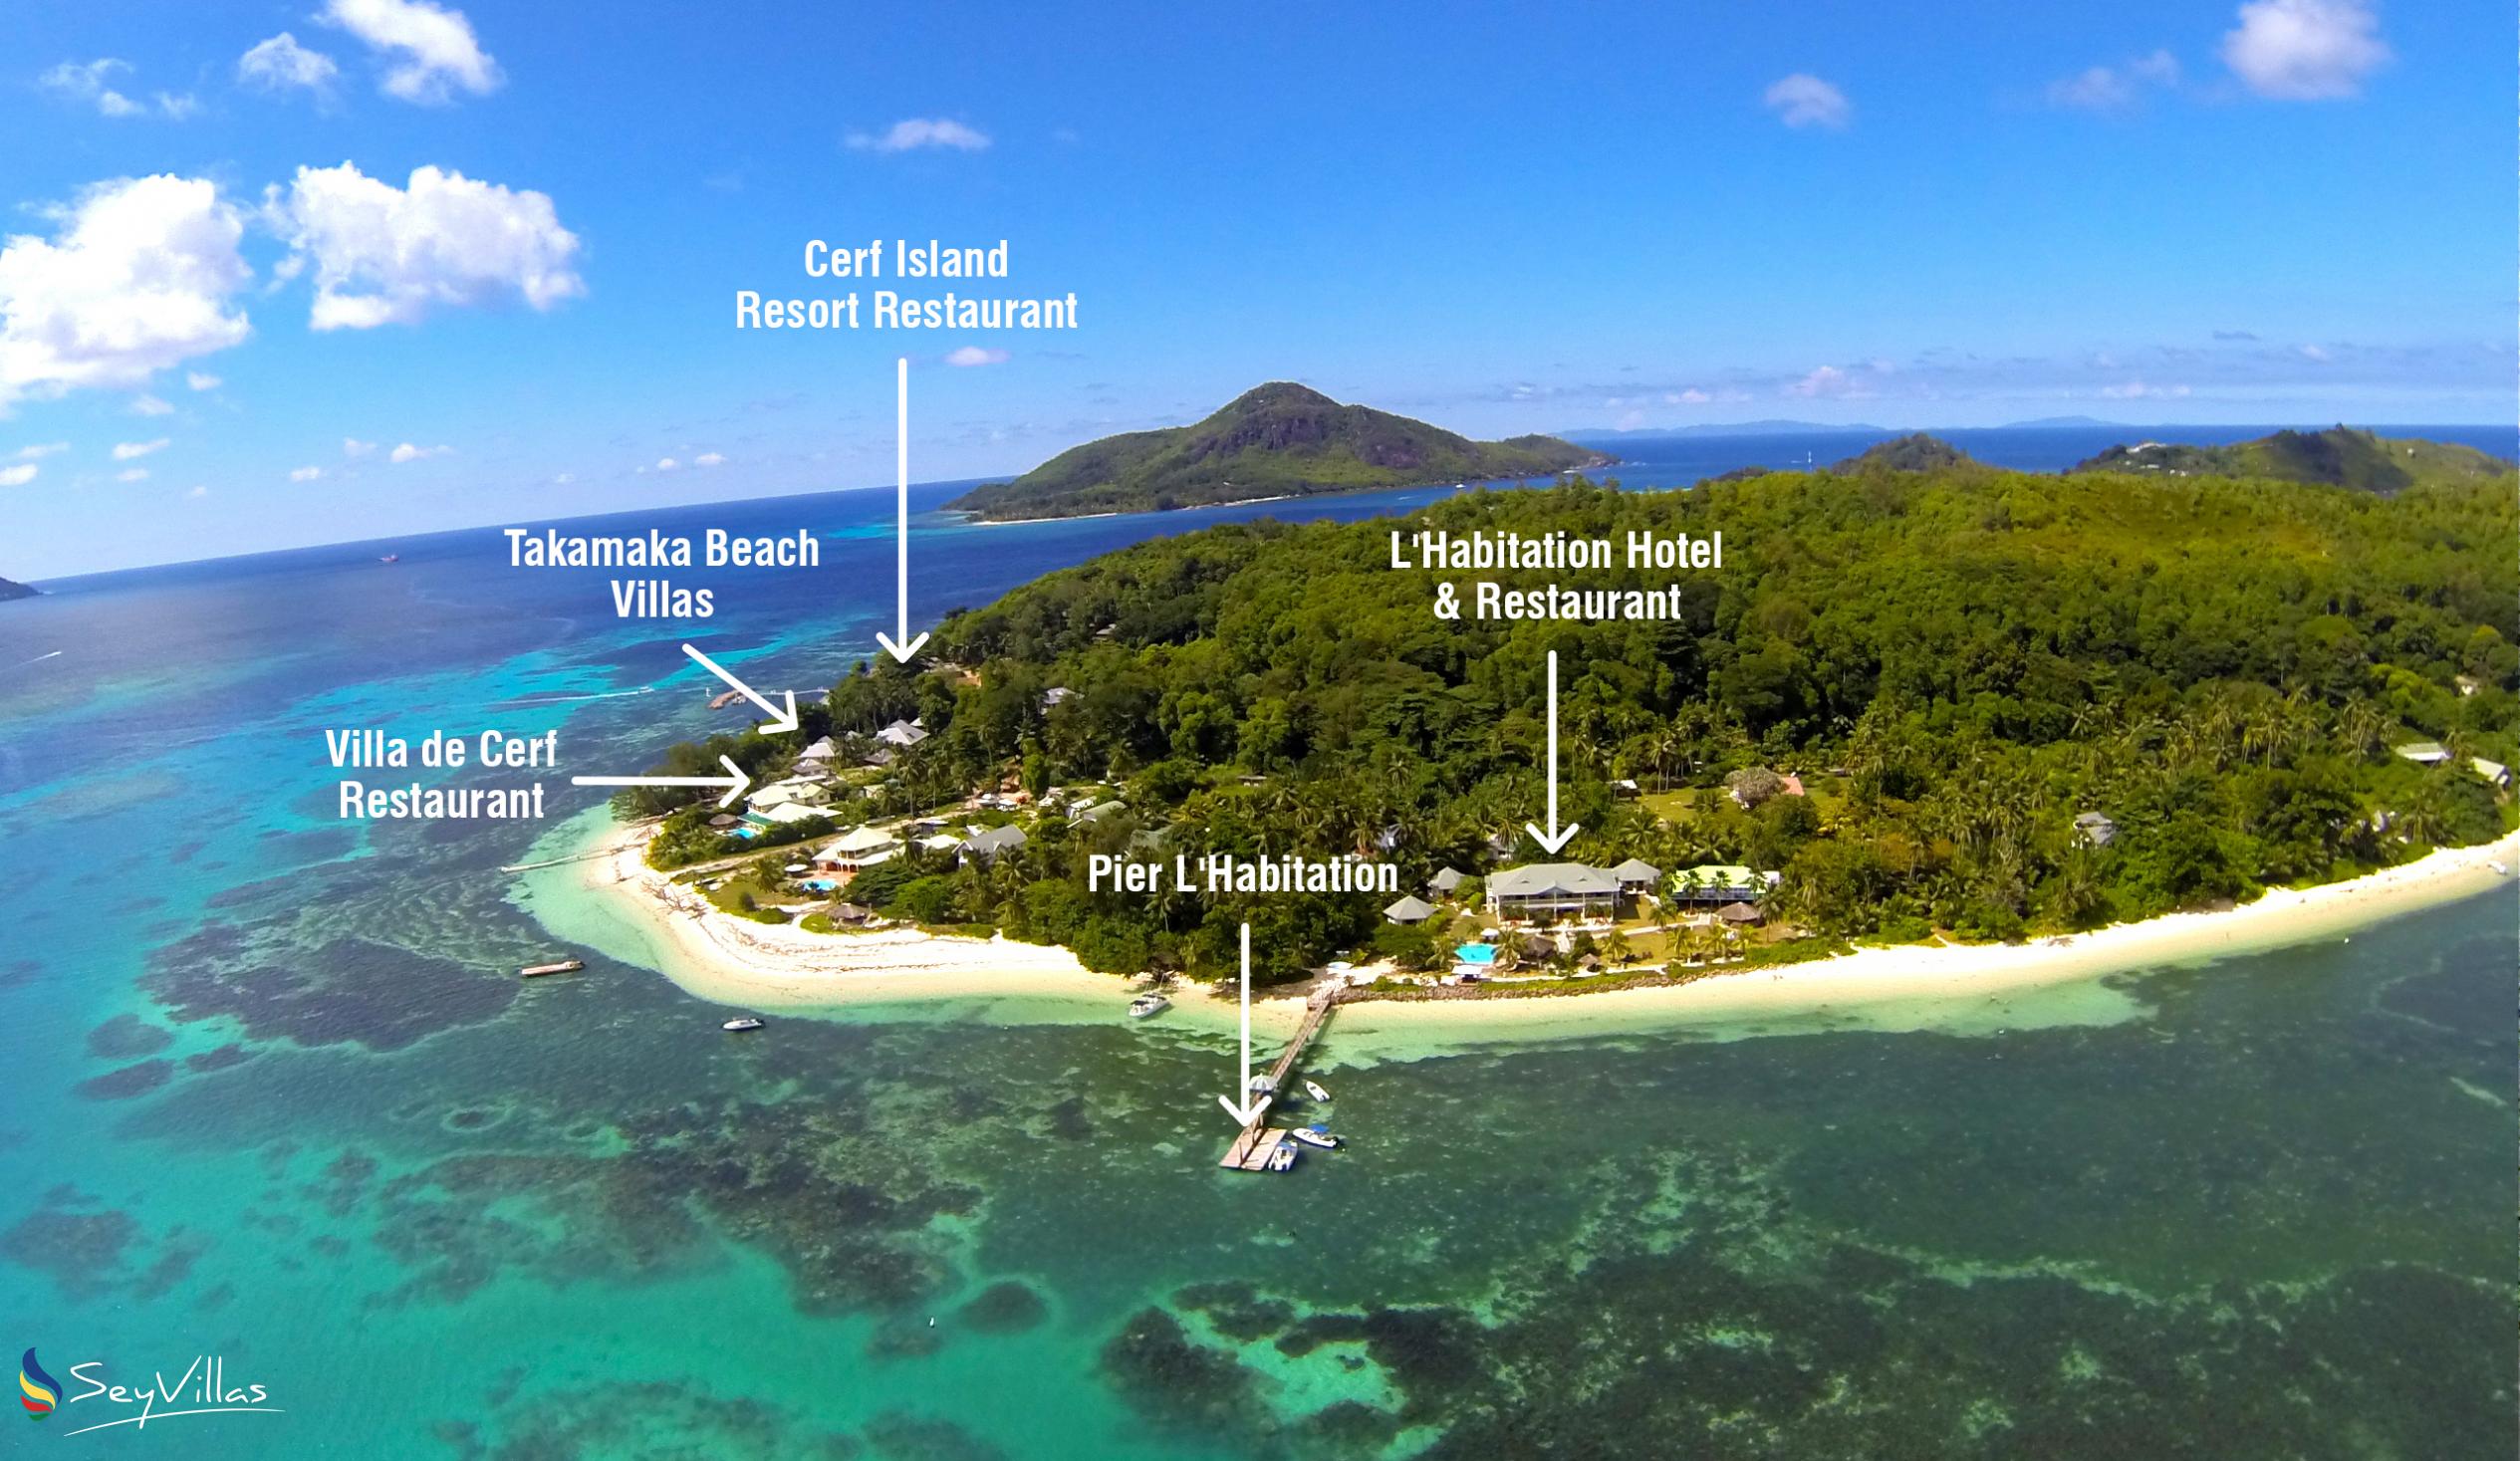 Foto 78: Surf Tropical Villa (Takamaka Beach Villas) - Aussenbereich - Cerf Island (Seychellen)